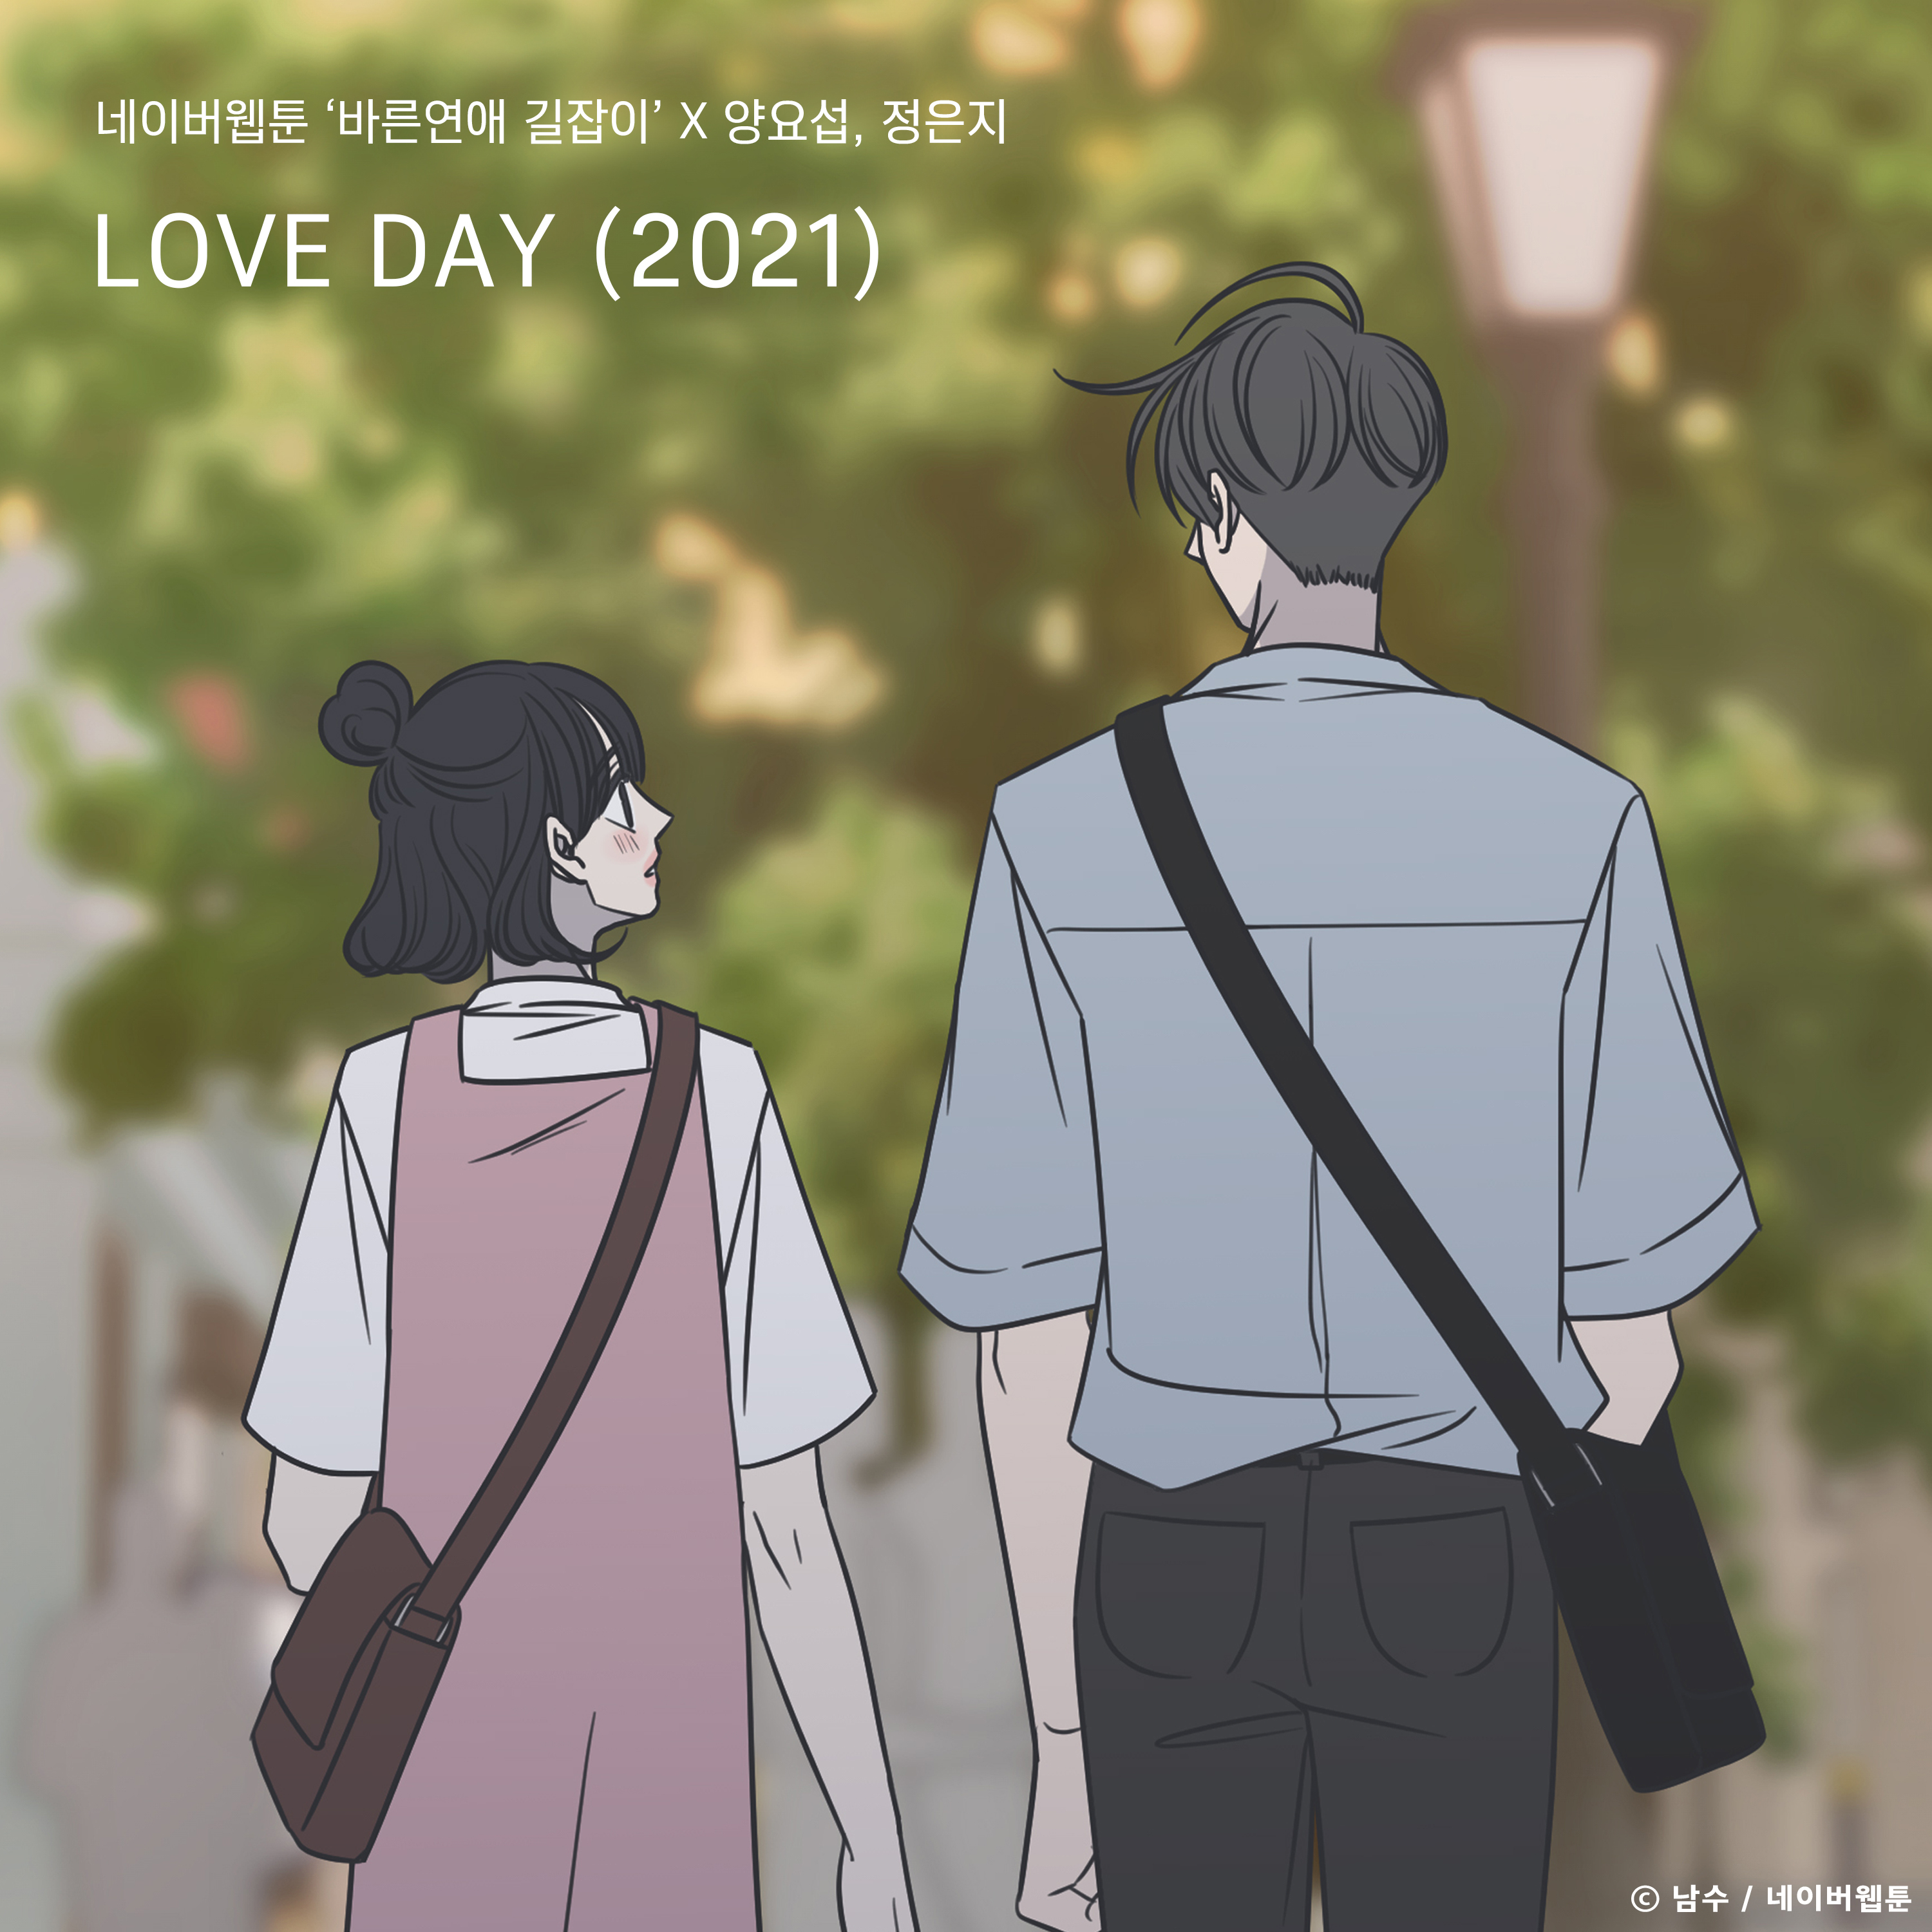 [情報] 梁耀燮, 鄭恩地 - LOVE DAY(2021)